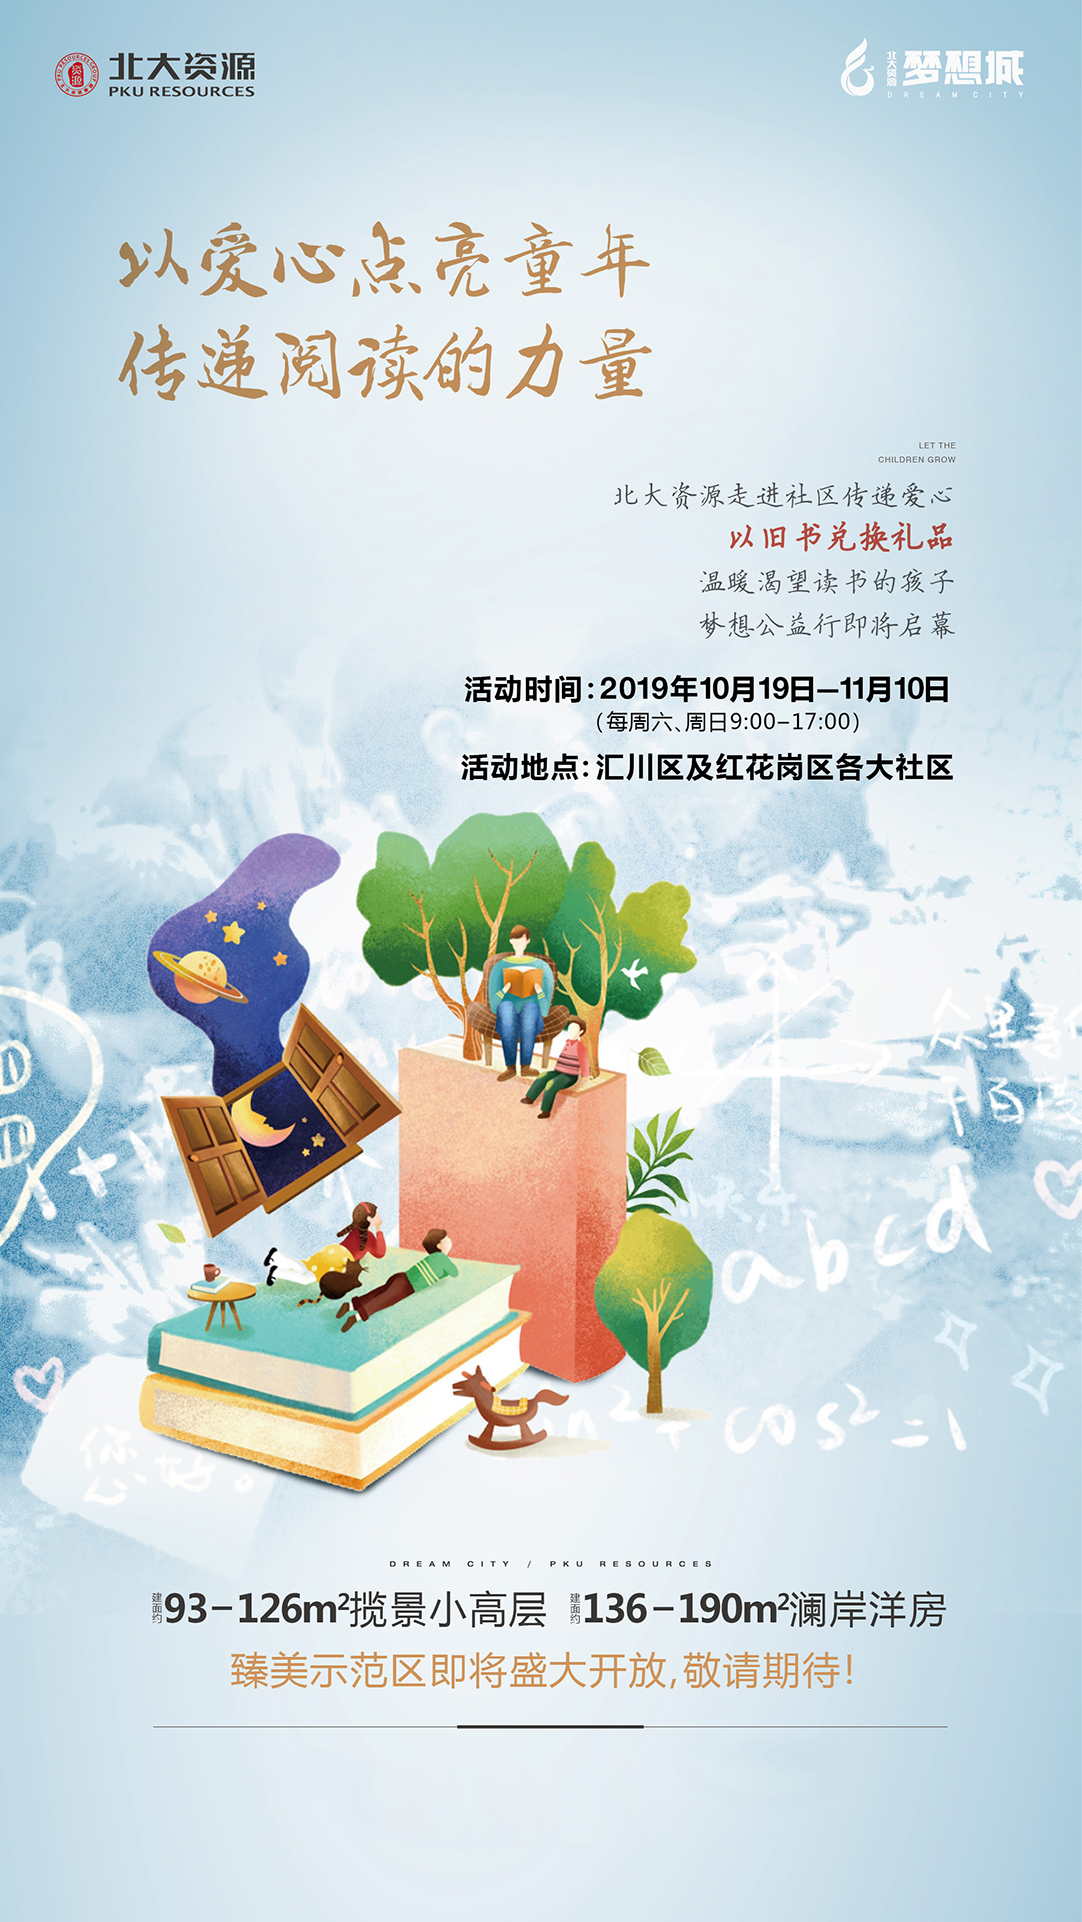 北大资源梦想城：爱心点亮童年 传递阅读力量 公益行即将启幕-中国网地产